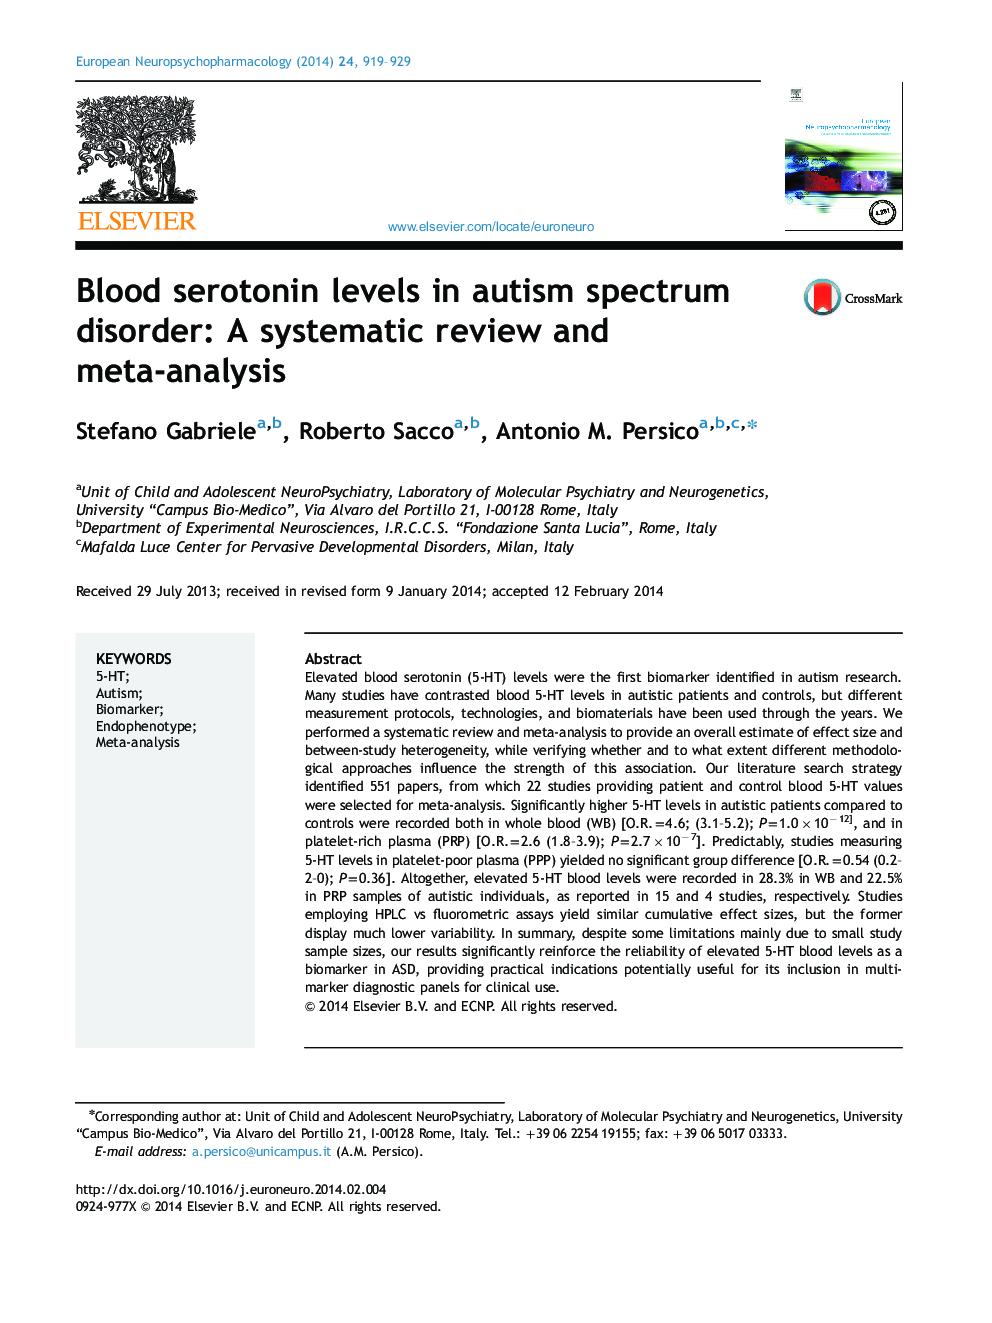 سطح سروتونین خون در اختلال طیف اوتیسم: بررسی منظم و متاآنالیز 